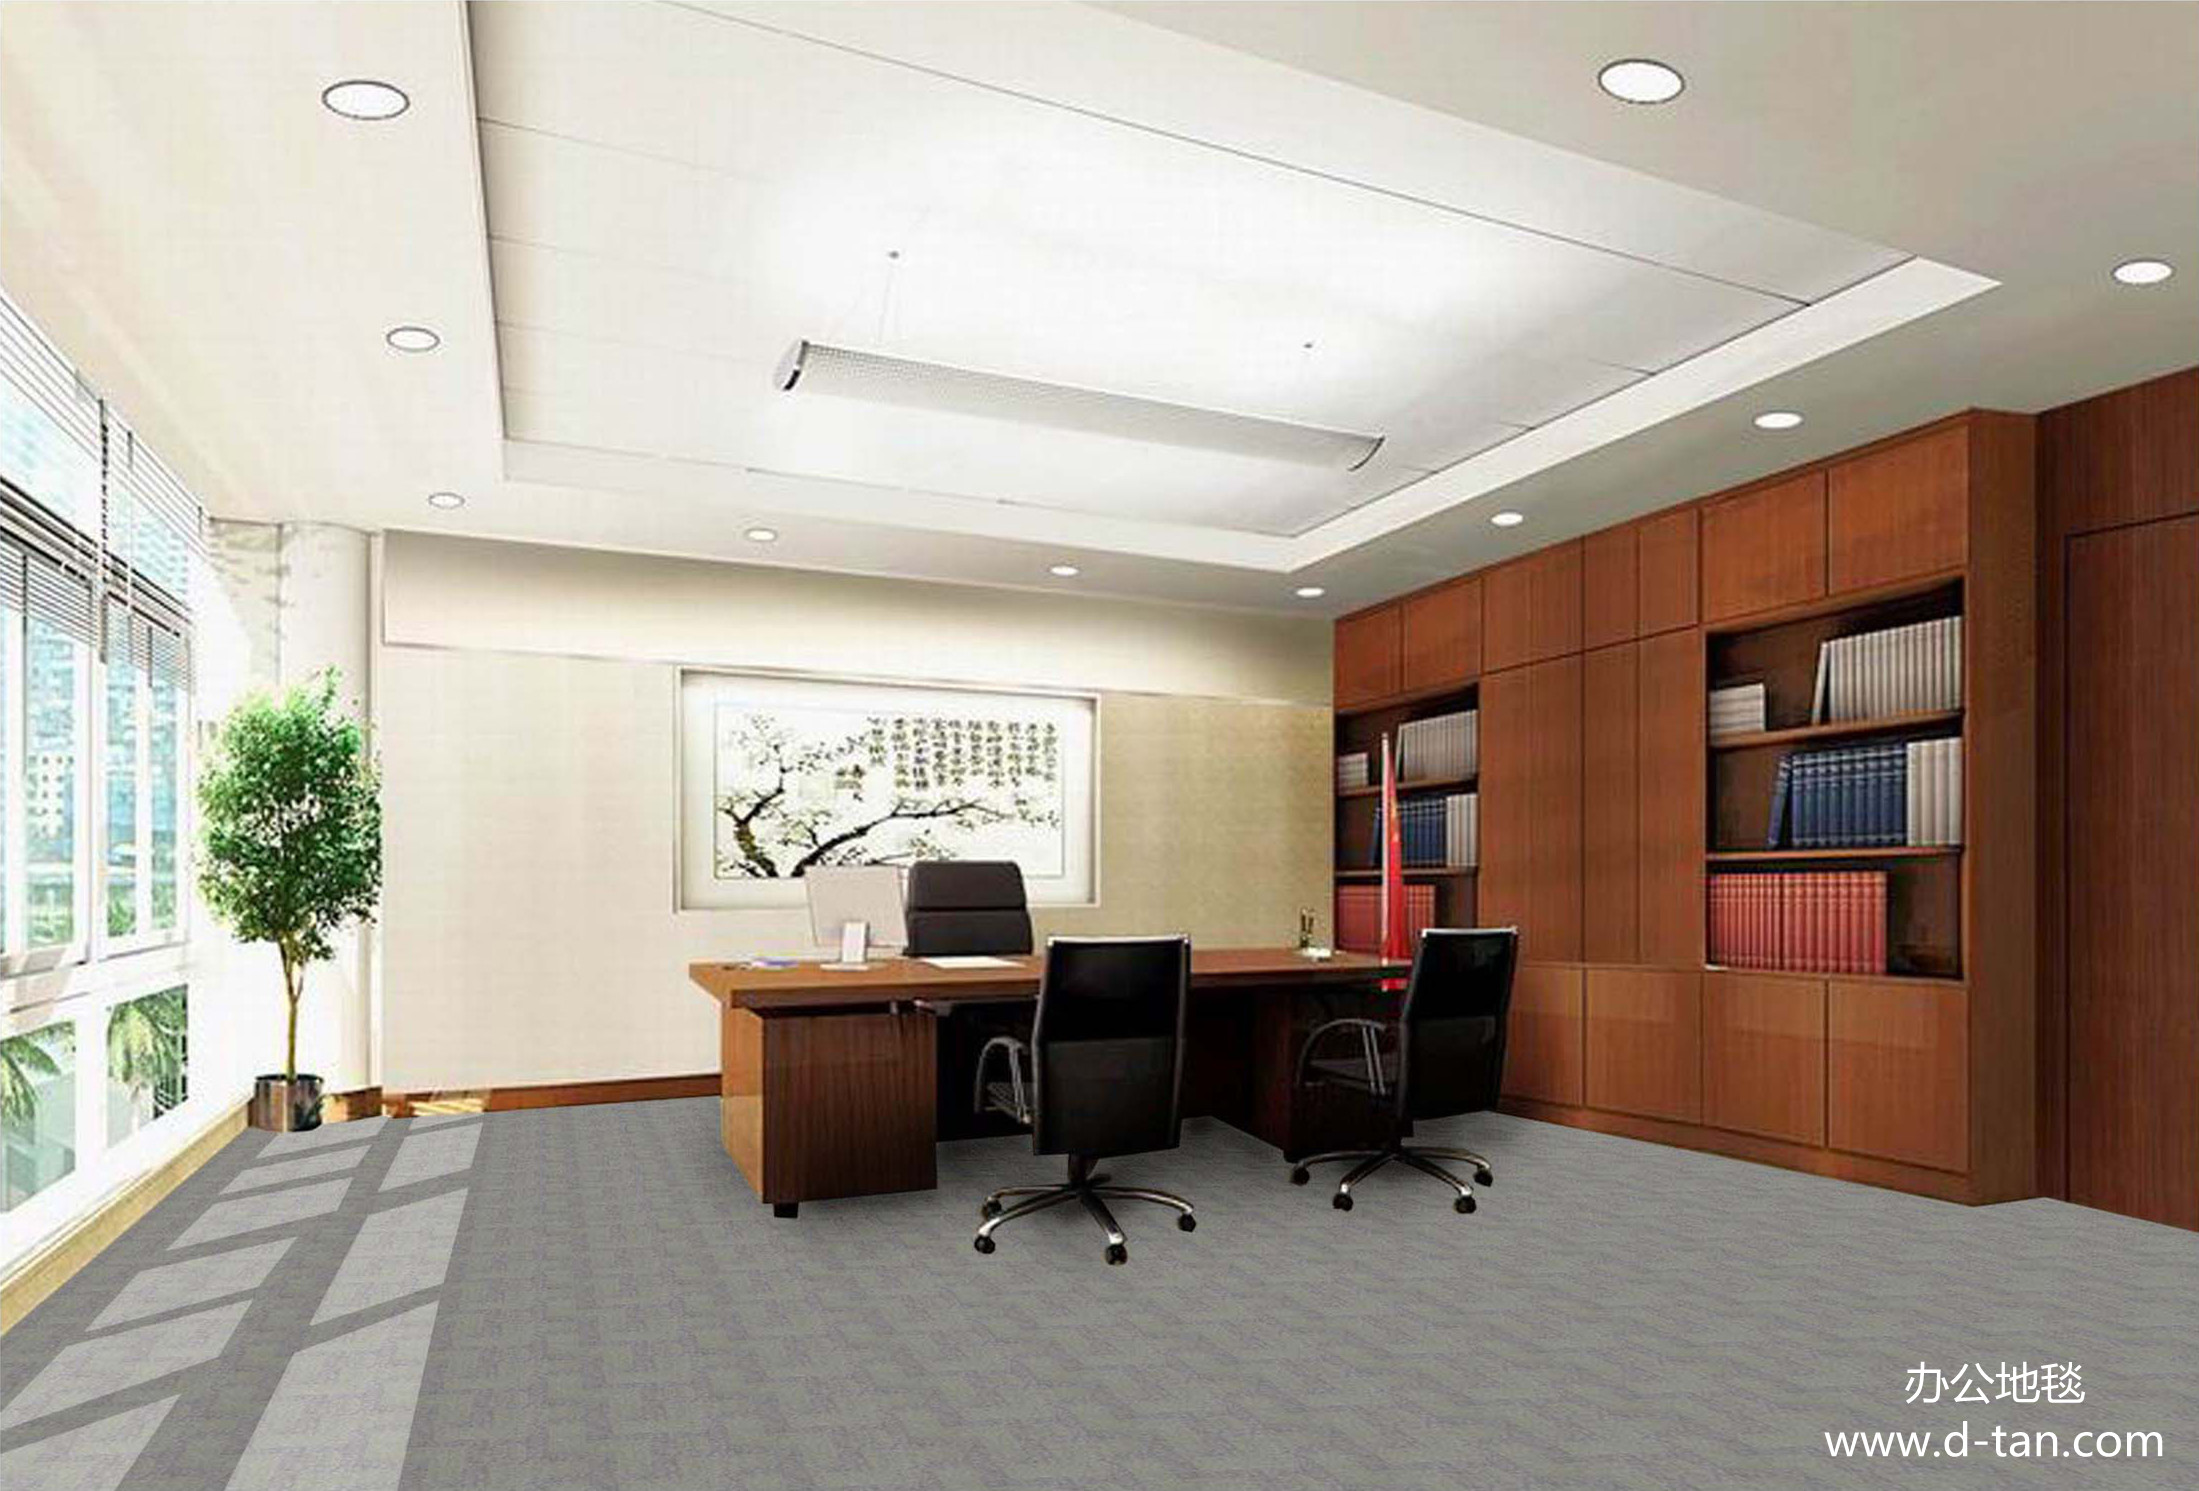 办公室装修设计过程中最科学的办公地毯材质是尼龙地毯